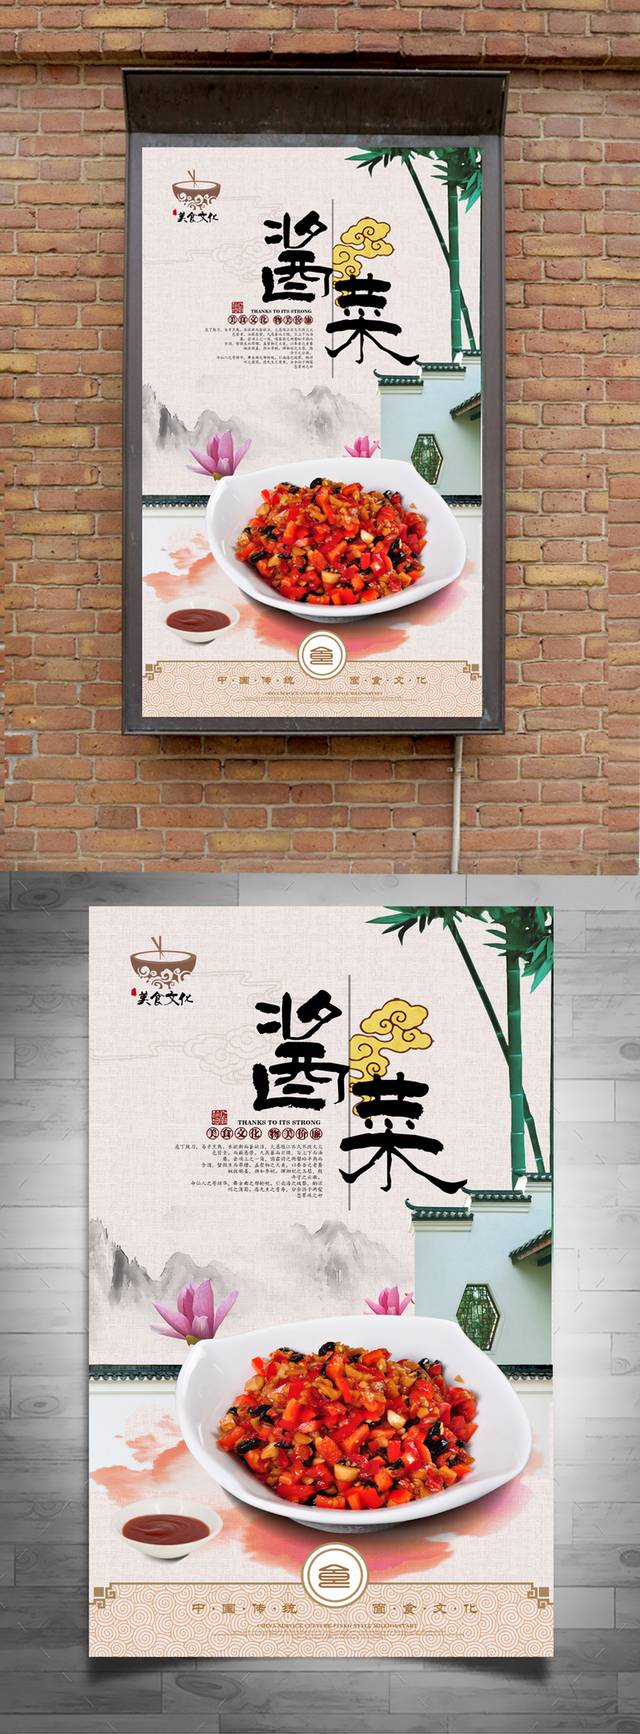 精美酱菜海报宣传设计下载